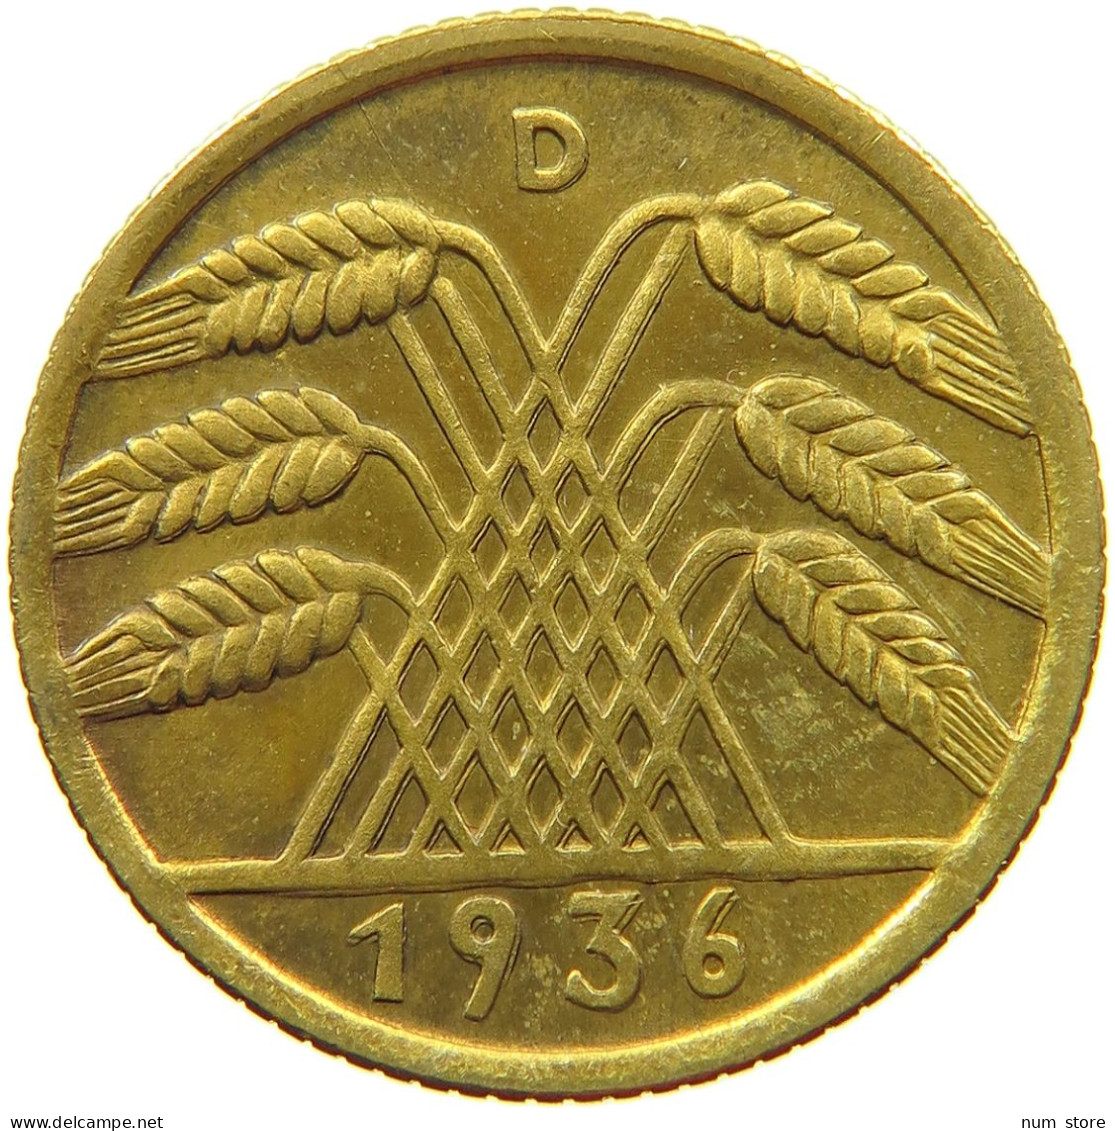 DRITTES REICH 10 PFENNIG 1936 D  #t145 0051 - 10 Reichspfennig